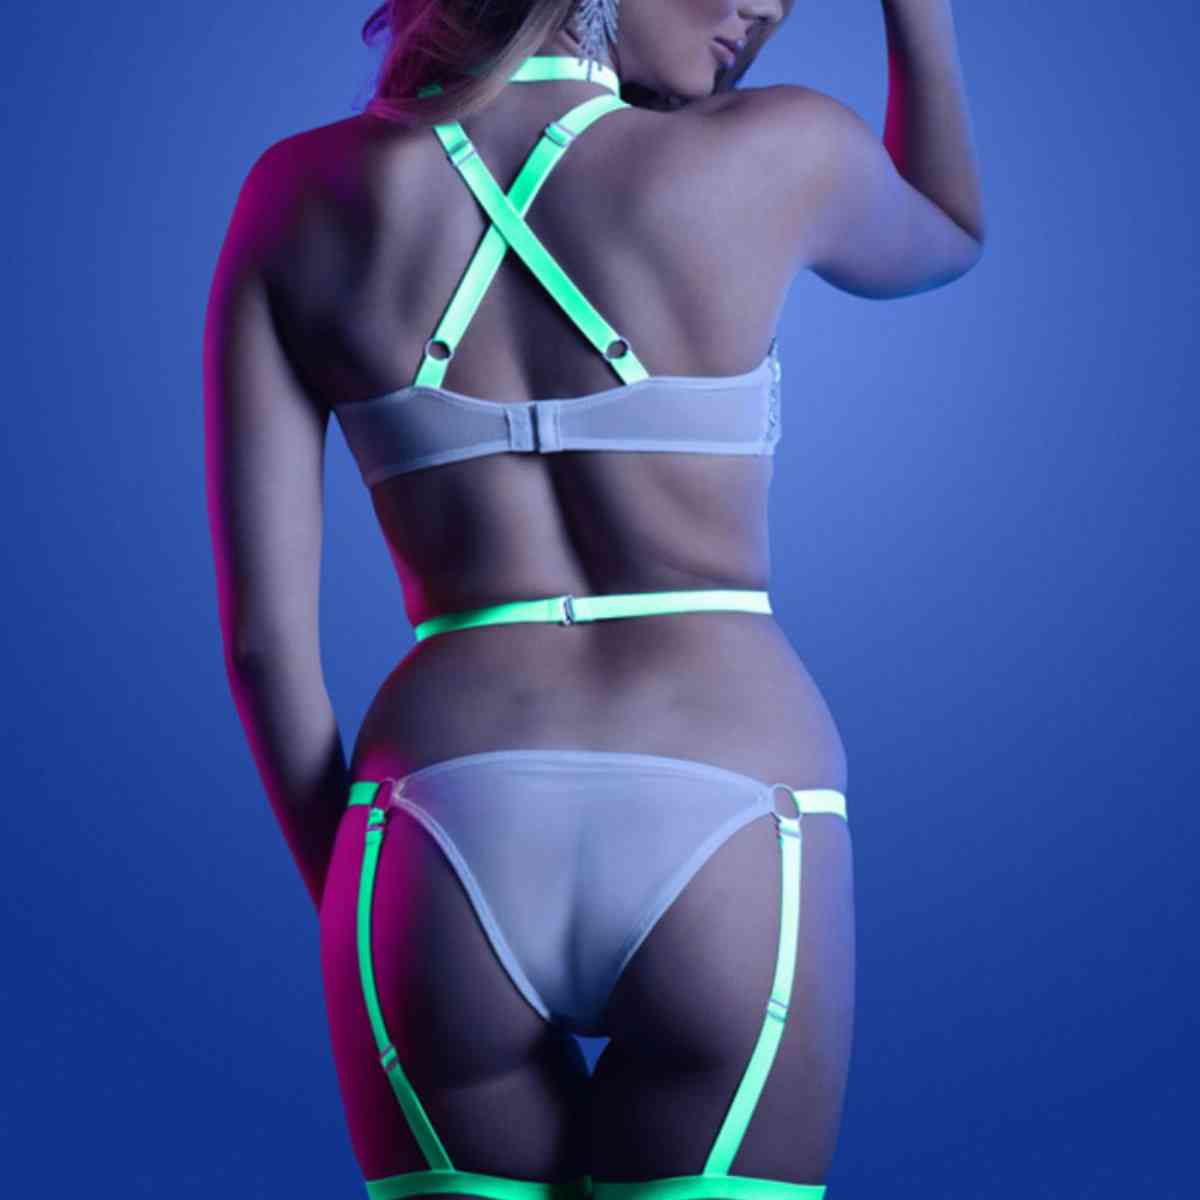 Frau in sexy Neon-Mesh-Strapsbody von hinten